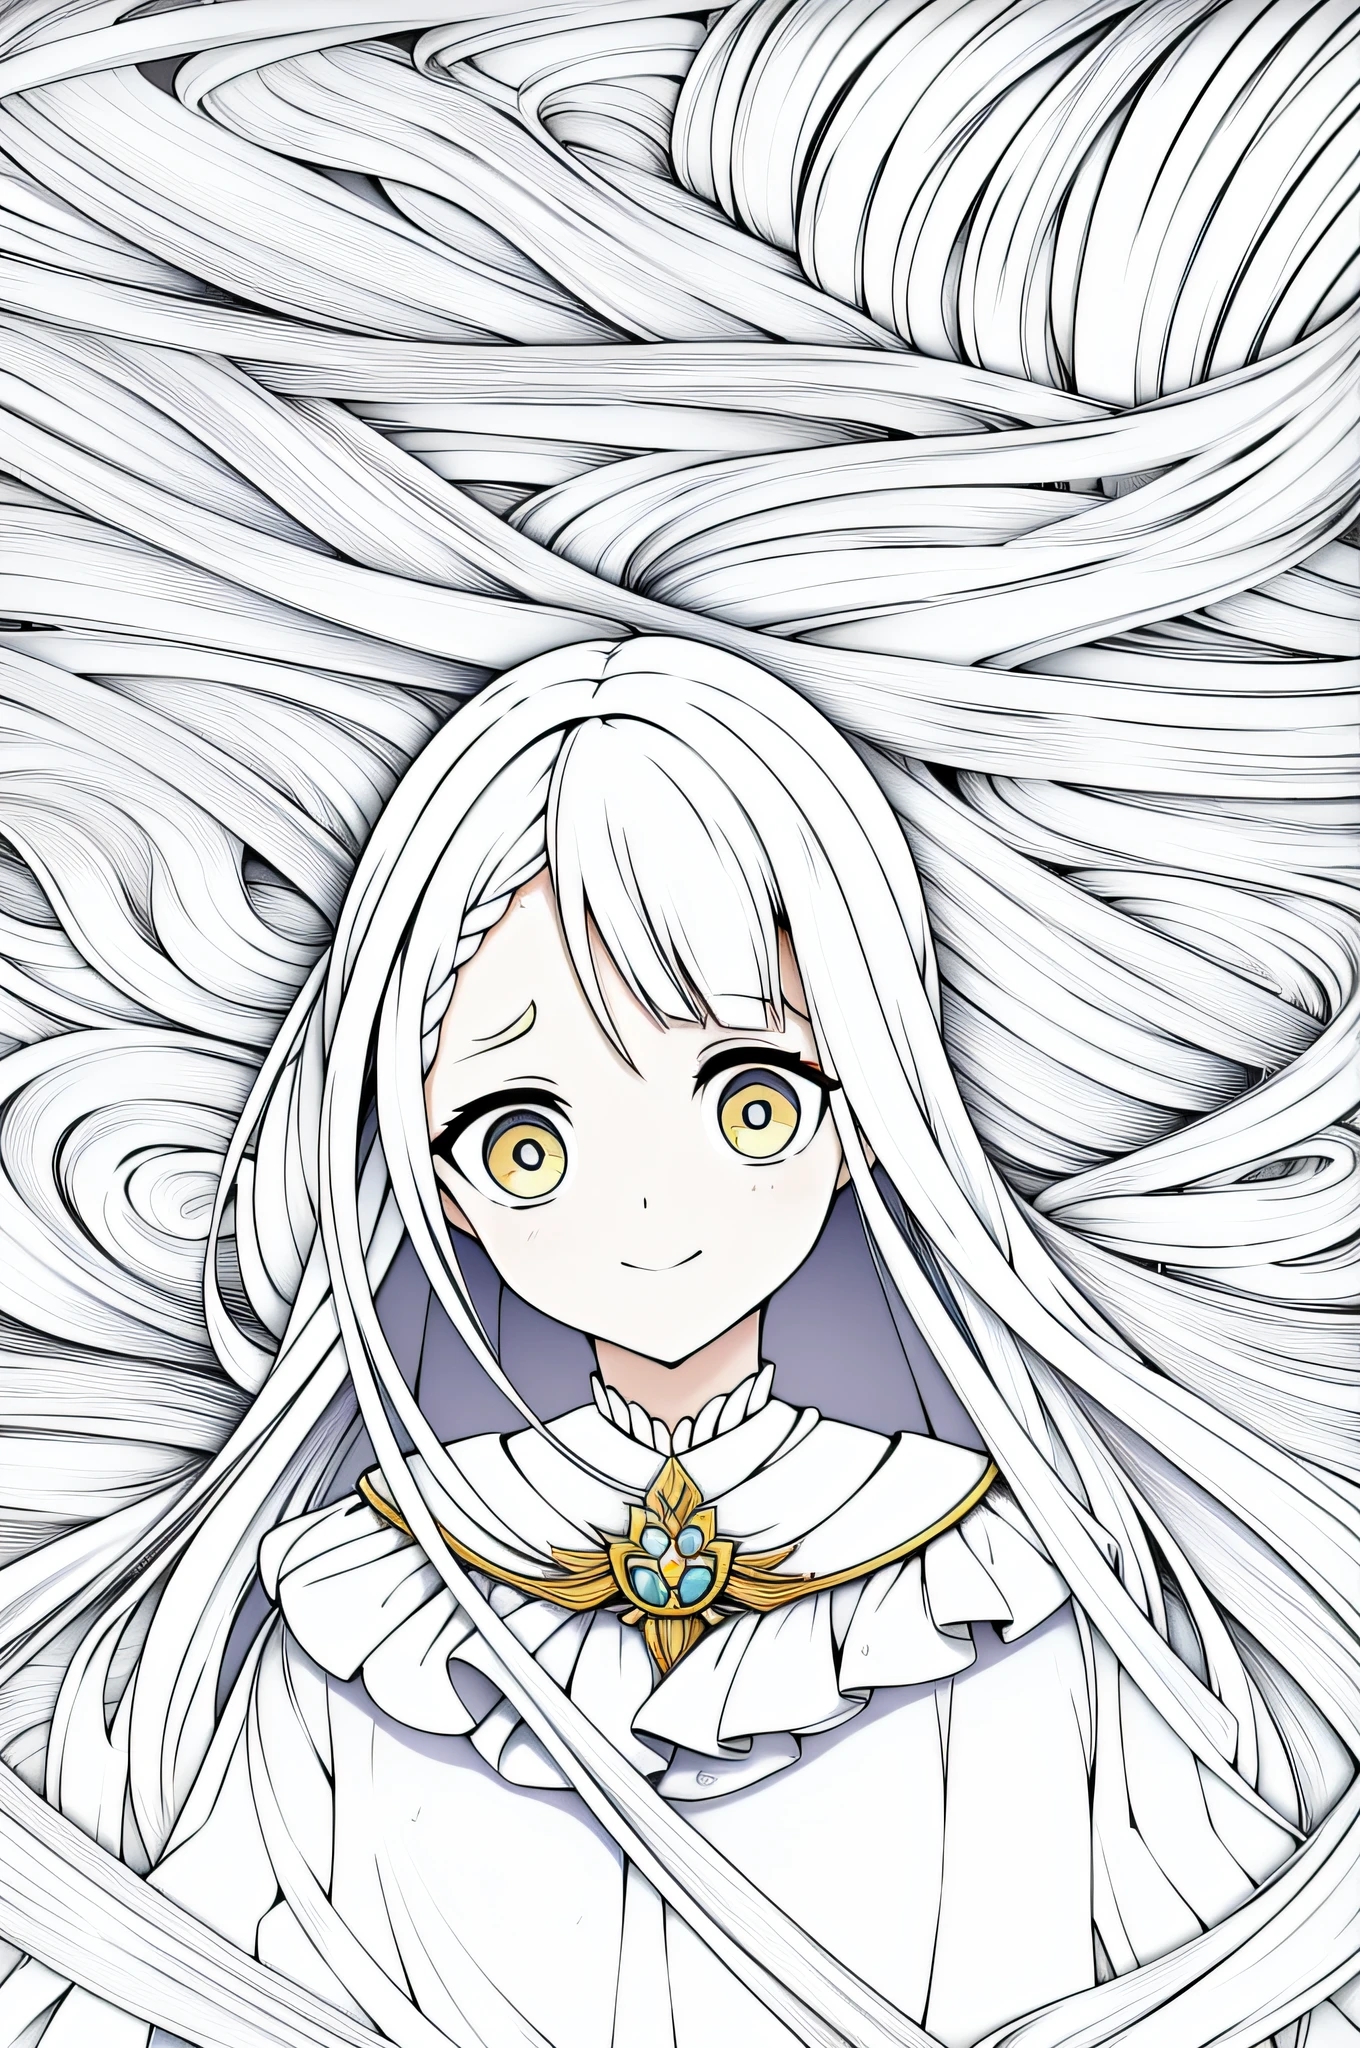 Uma garota elfa, olhos claros, uma coroa de flores, olhar apaixonante, (cabelo curto), (imagem super detalhado, qualidade superior), feliz